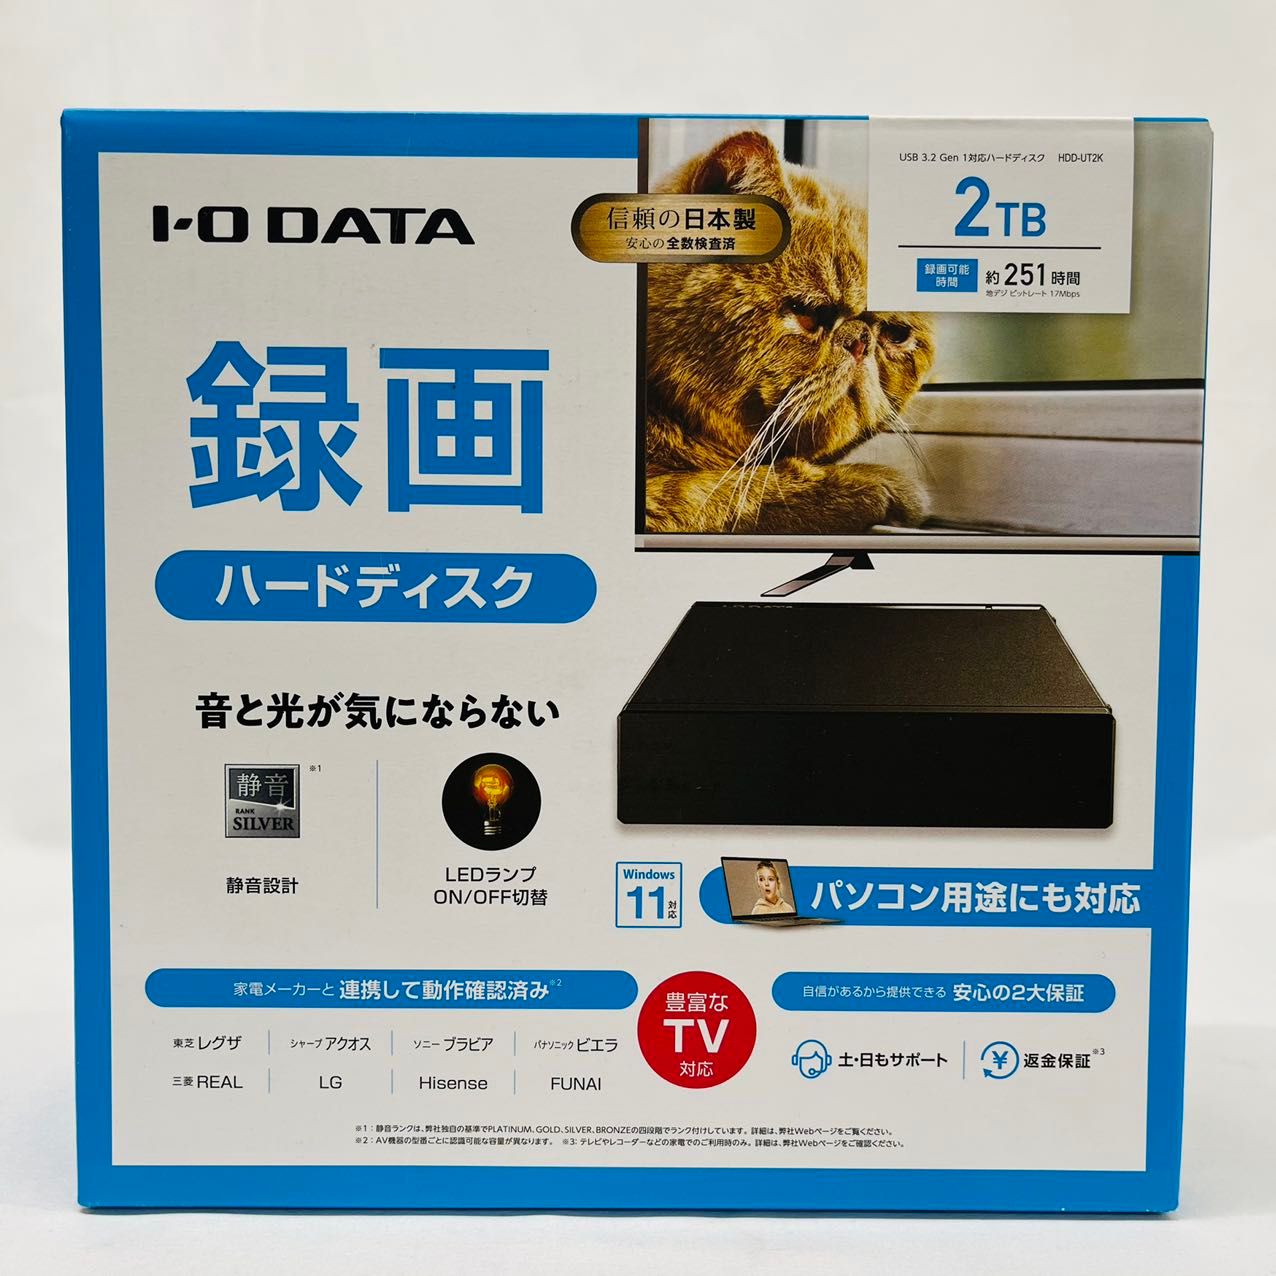 返品送料無料 IOデータ 外付けHDD USB-A接続 家電録画対応 24時間連続録画対応 ブラック 2TB 据え置き型 HDD-AUT2  10000円キャッシュバック